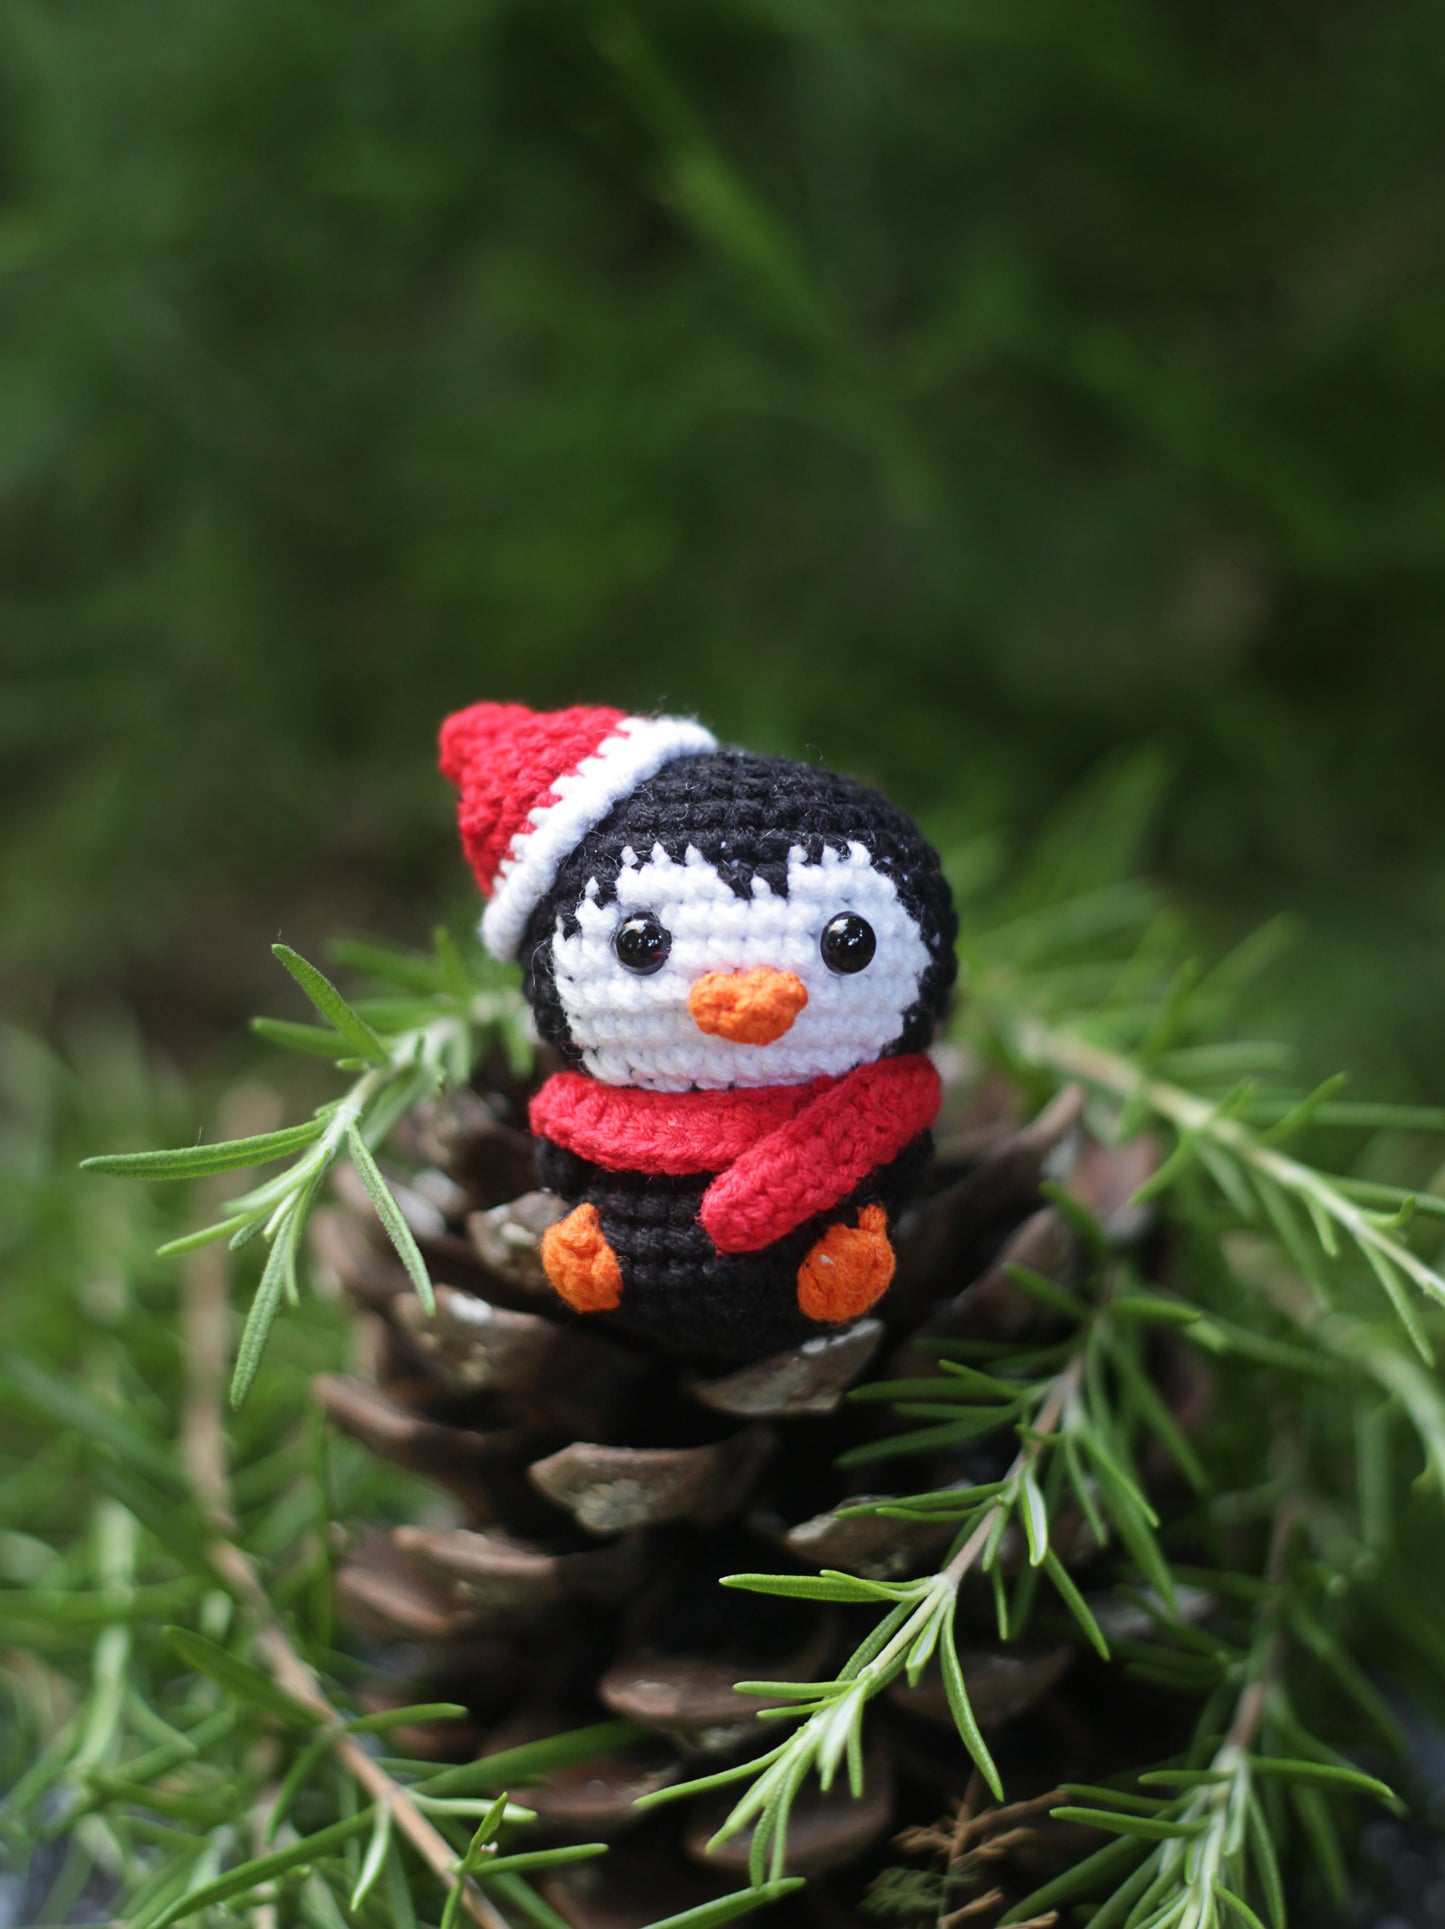 Penguin crochet mini doll Christmas ornament